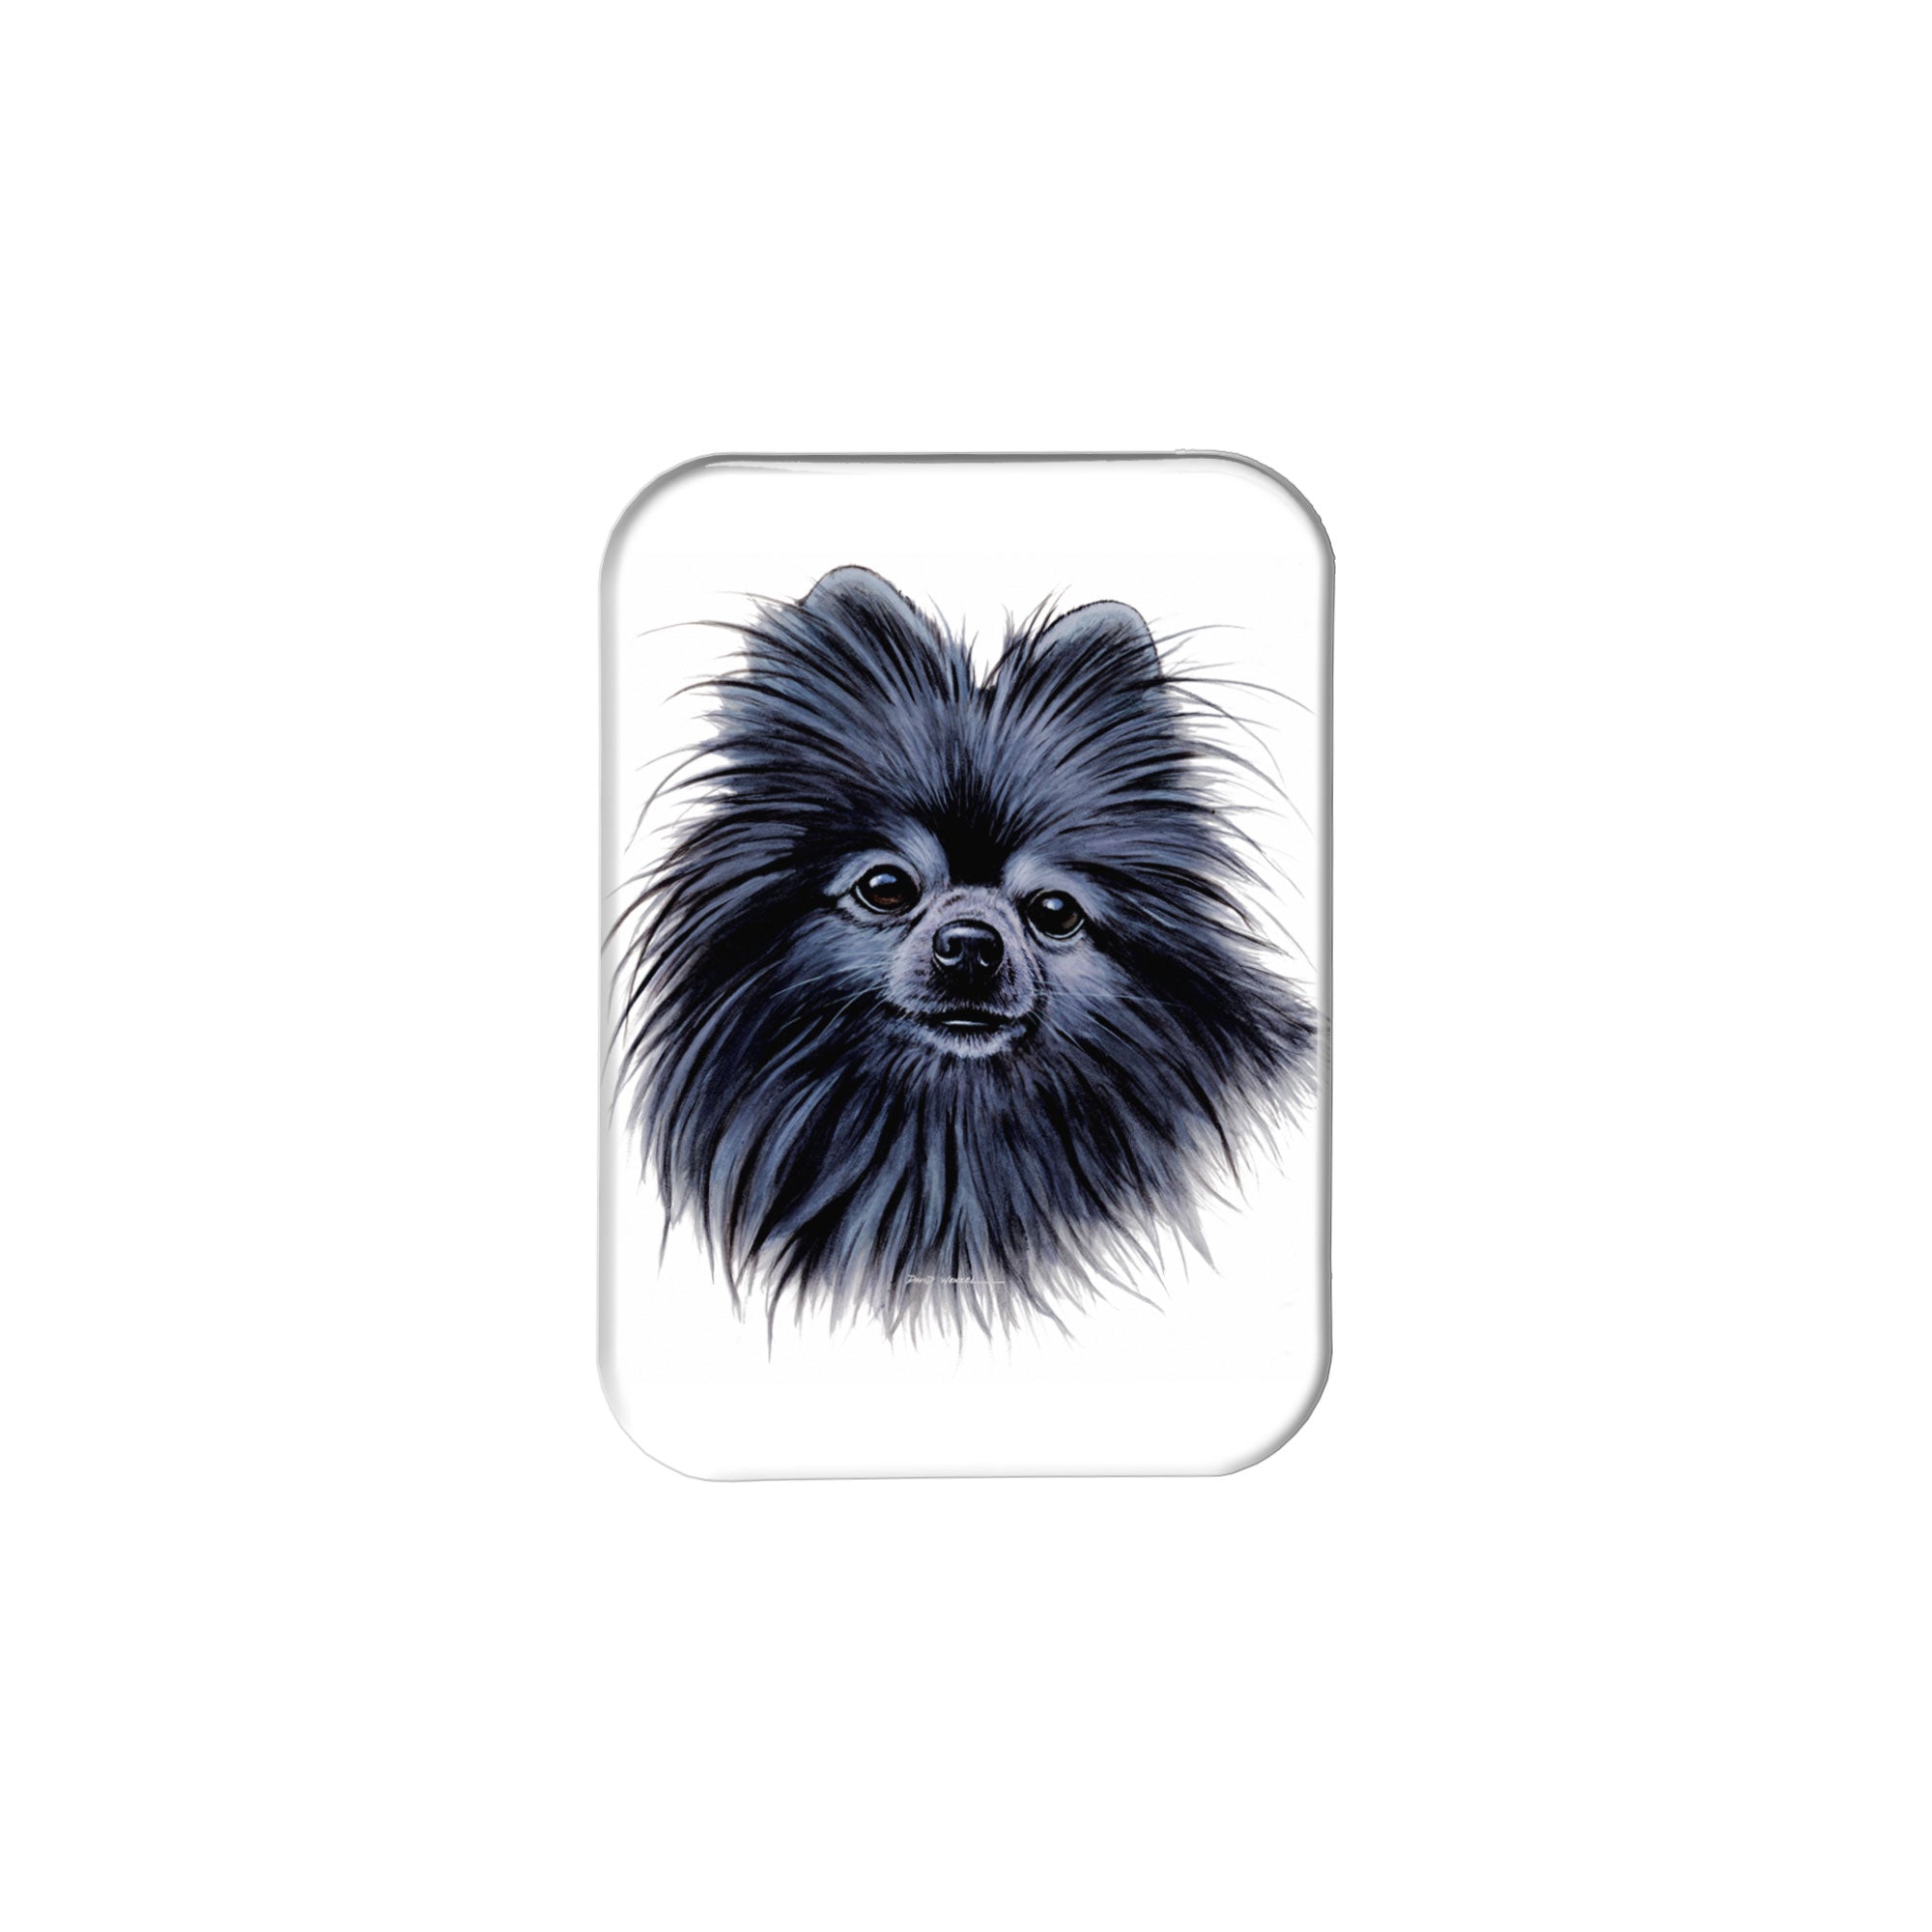 "Black Pomeranian" - 2.5" X 3.5" Rectangle Fridge Magnets